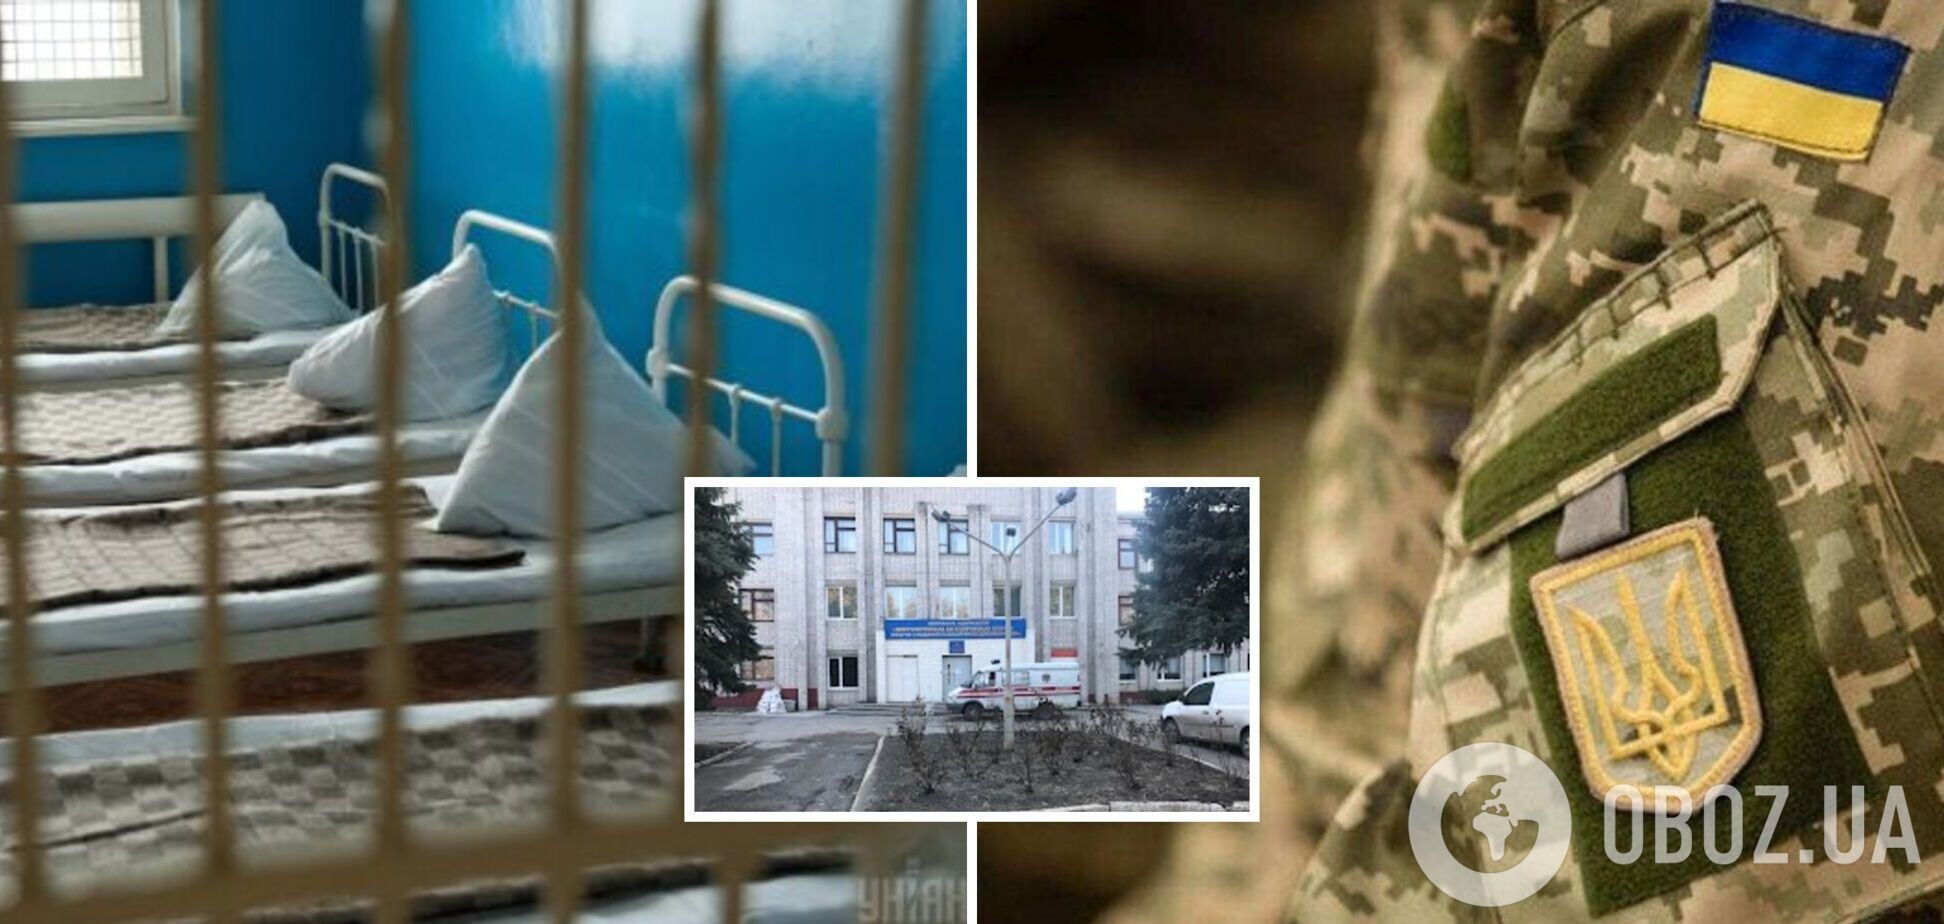 Украинского военного принудительно госпитализировали в психбольницу в Днепре